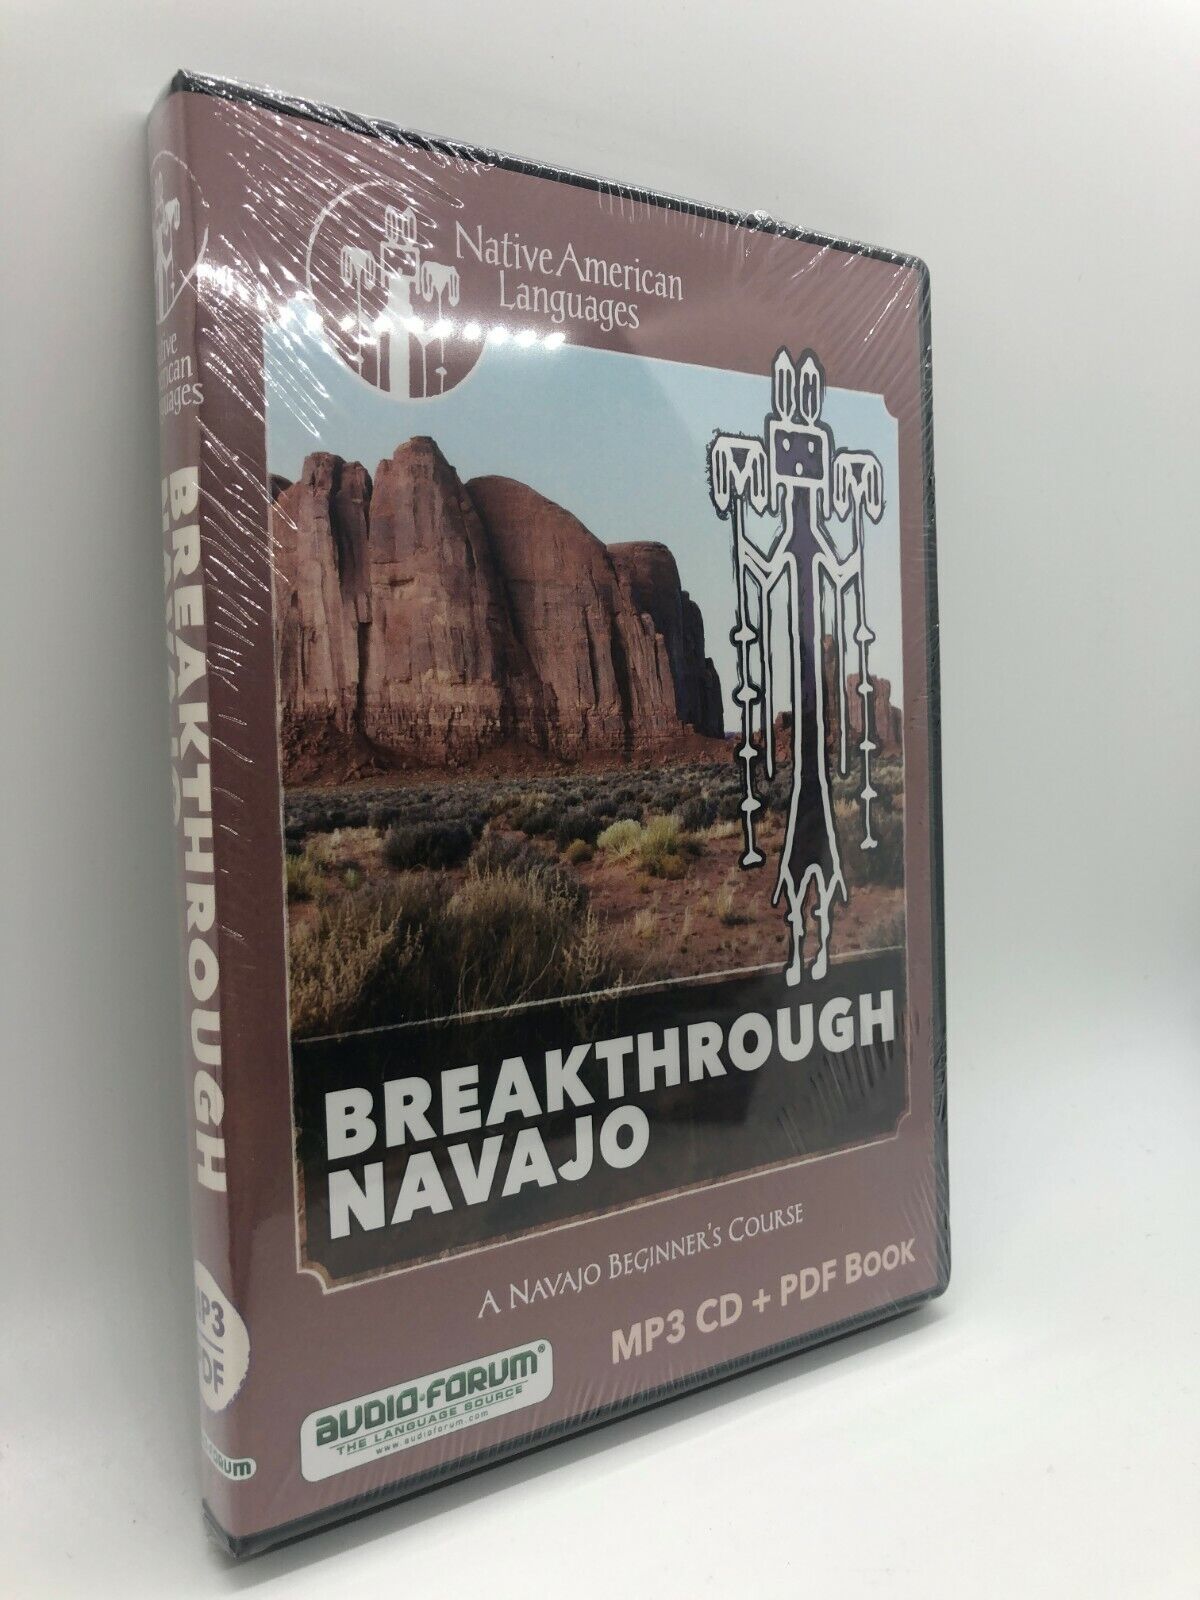 Breakthrough Navajo (PC/MAC) by Audio-Forum 